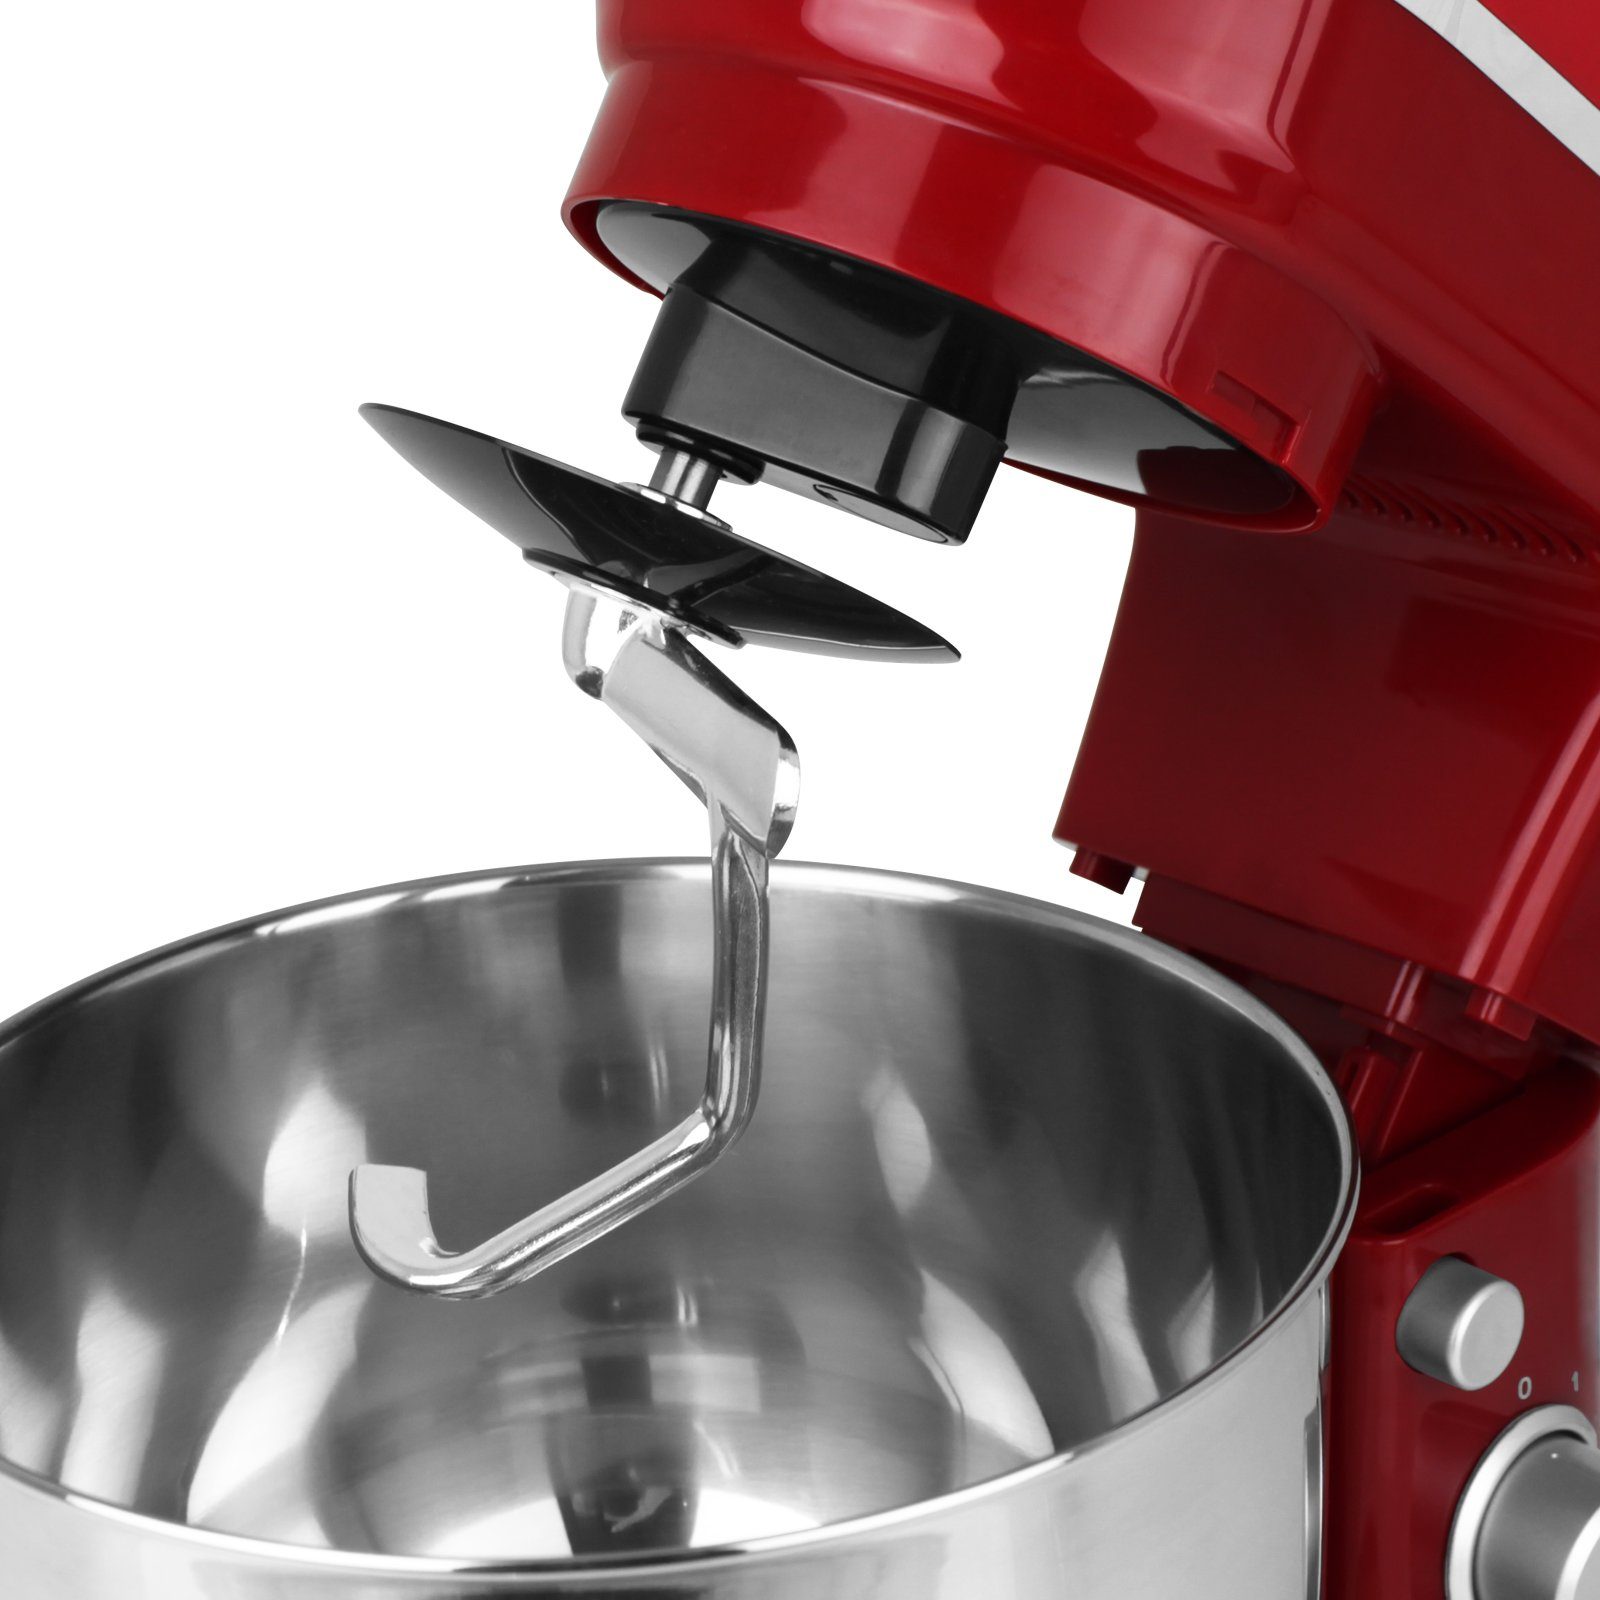 Hatex Küchenmaschine Rührfunktion Teigkneter Mixer W, 1200,00 Rot Rühraufsatz Standmixer 1200W mit Farbwahl